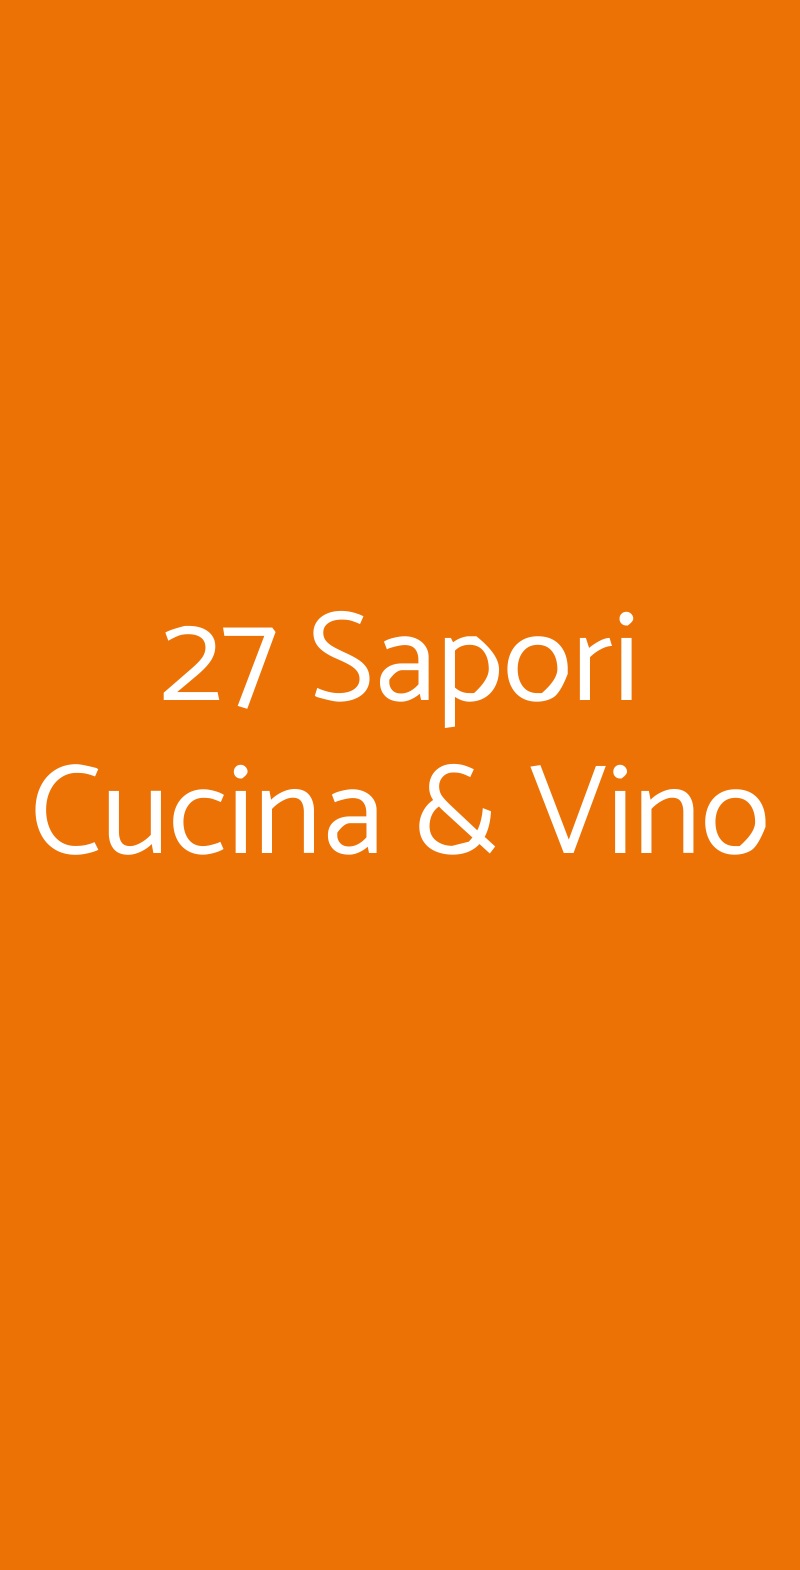 27 Sapori Cucina & Vino Genova menù 1 pagina